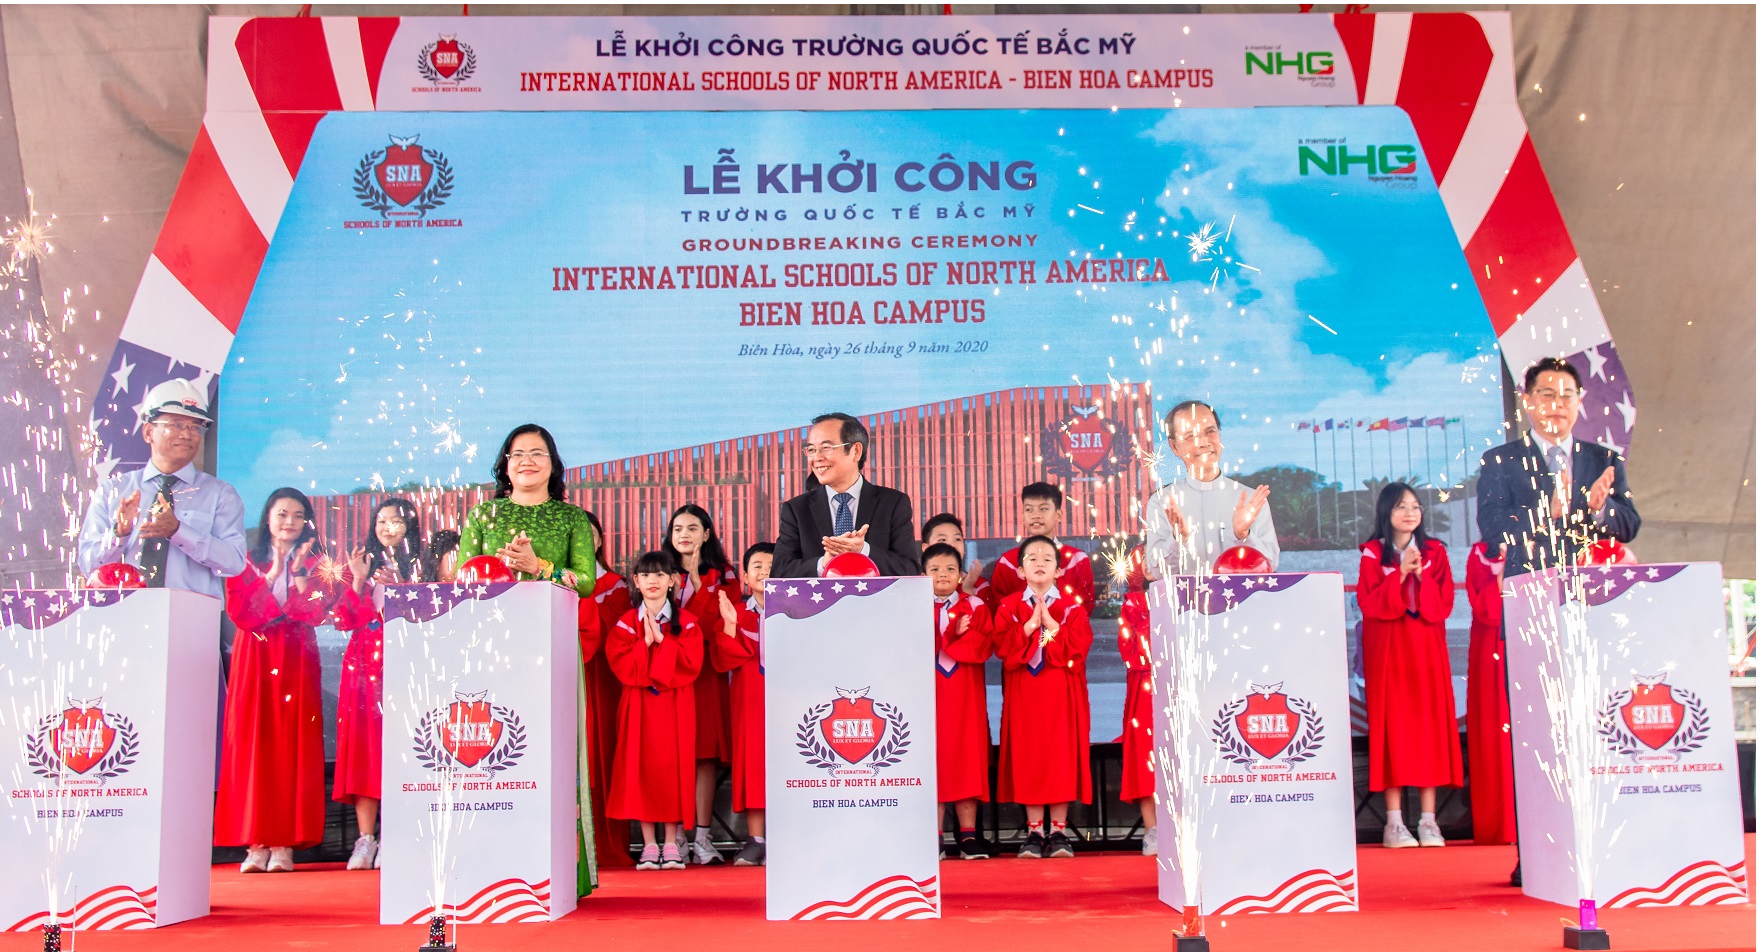 LE KHOI CONG 1 Khởi công trường Quốc tế Bắc Mỹ - SNA Biên Hòa